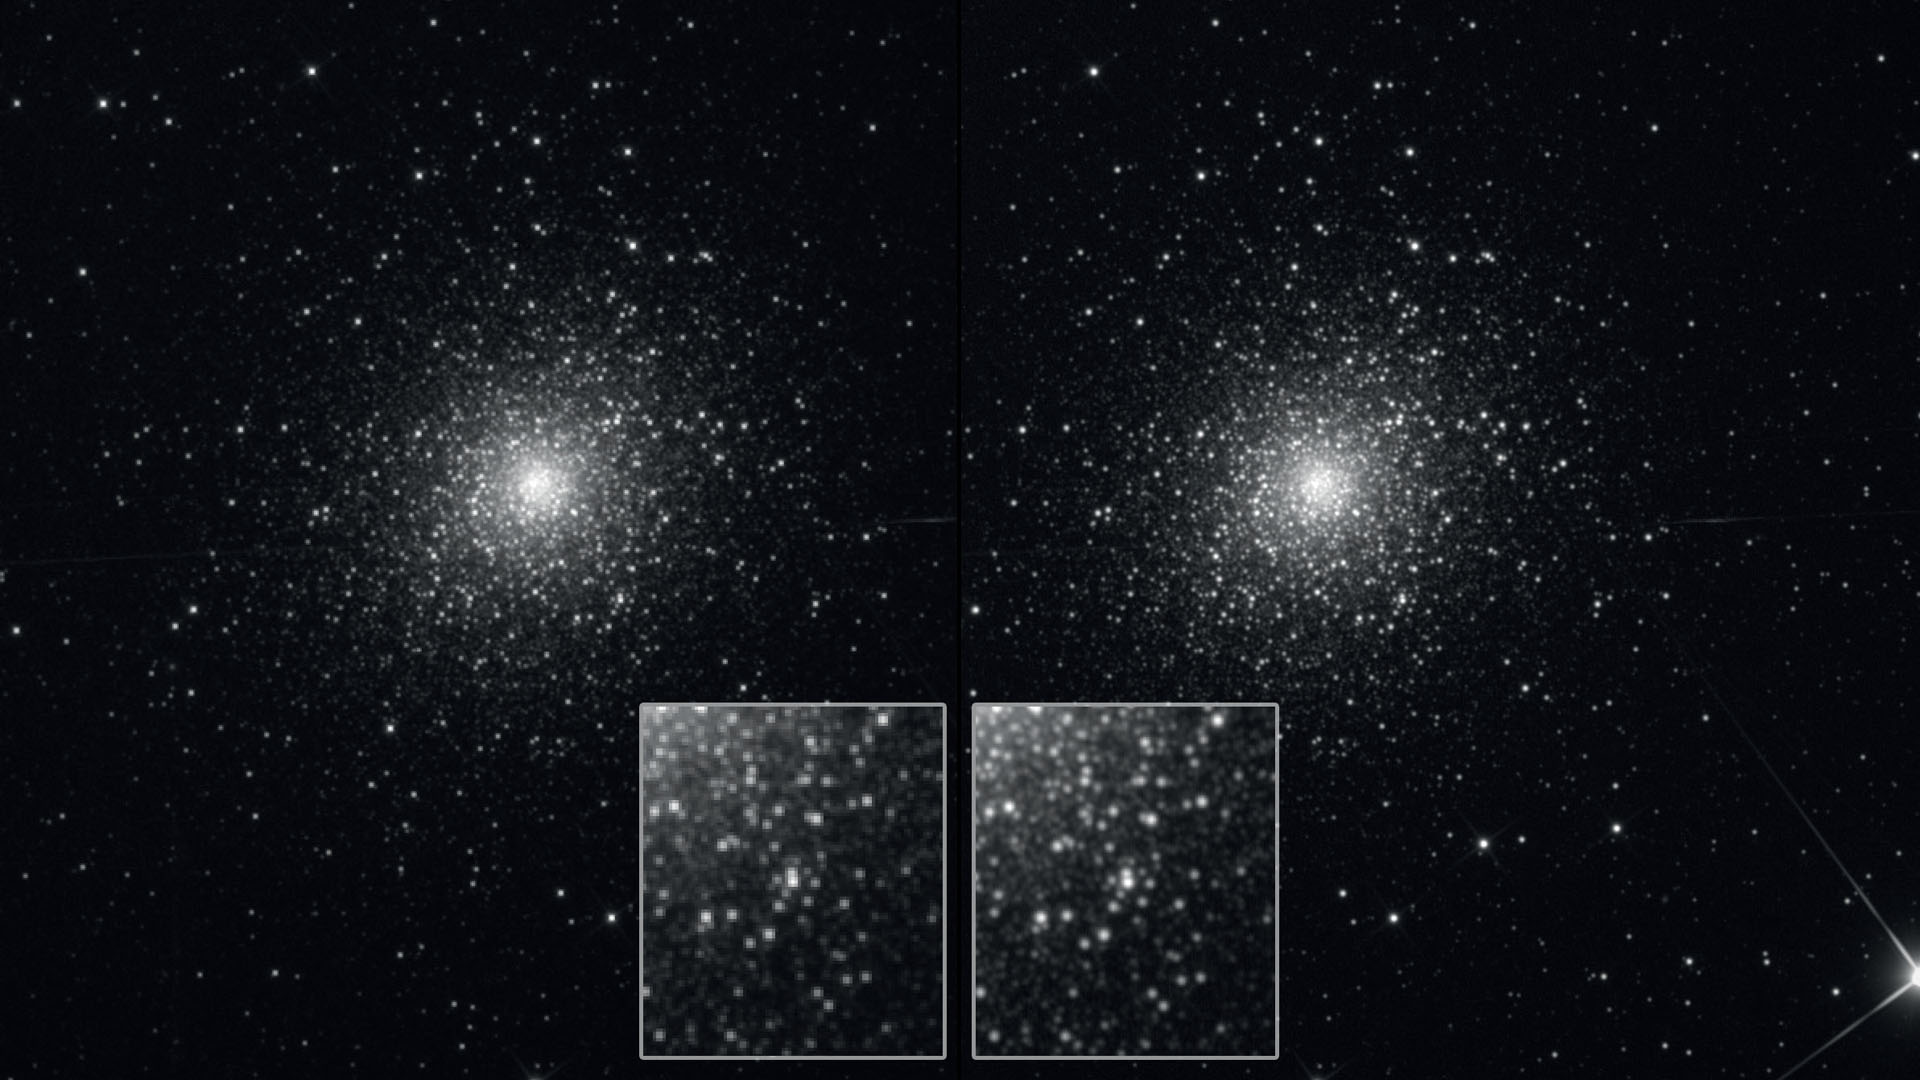 L’amas globulaire M5 : à gauche, avec empilement normal. À droite, avec drizzle-stacking de 20 images, temps d’exposition 300 s chacune. Pour comparaison, la version normale a été mise à la même échelle d’image que l’image reconstruite. Le setup, pour l’image, se situait dans la plage de sous-échantillonnage, reconnaissable aux nombreux profils d’étoiles reproduits de façon non idéale et apparaissant quelque peu pixelisés. Une lunette avec une ouverture de 105 mm et une distance focale de 670 mm était équipée d’un appareil photo avec des pixels de 9 µm. L’échantillonnage se situe ainsi à 2,77"/pixel, pour un pouvoir de résolution théorique de 1,14". La technique du drizzle permet une résolution plus fine des étoiles fortement groupées et les couples d’étoiles rapprochées sont plus nettement séparés (résultat à droite). M. Weigand